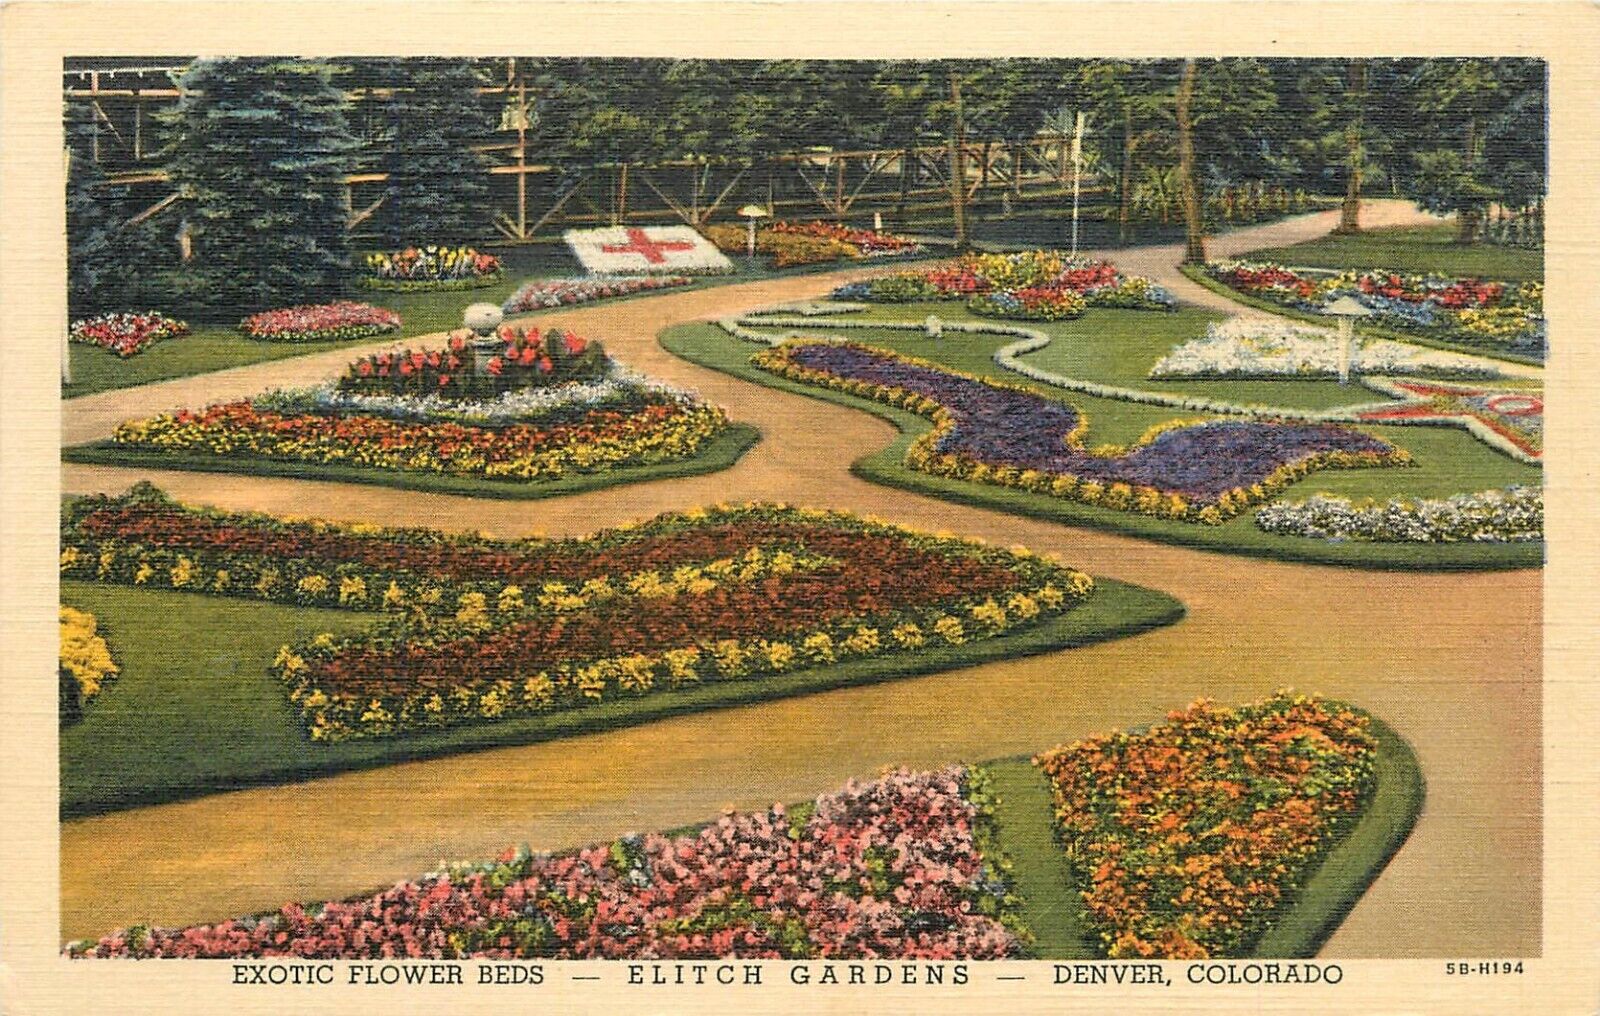 c1940s Elitch Gardens Amusement Park Flower Beds Denver, Colorado Postcard